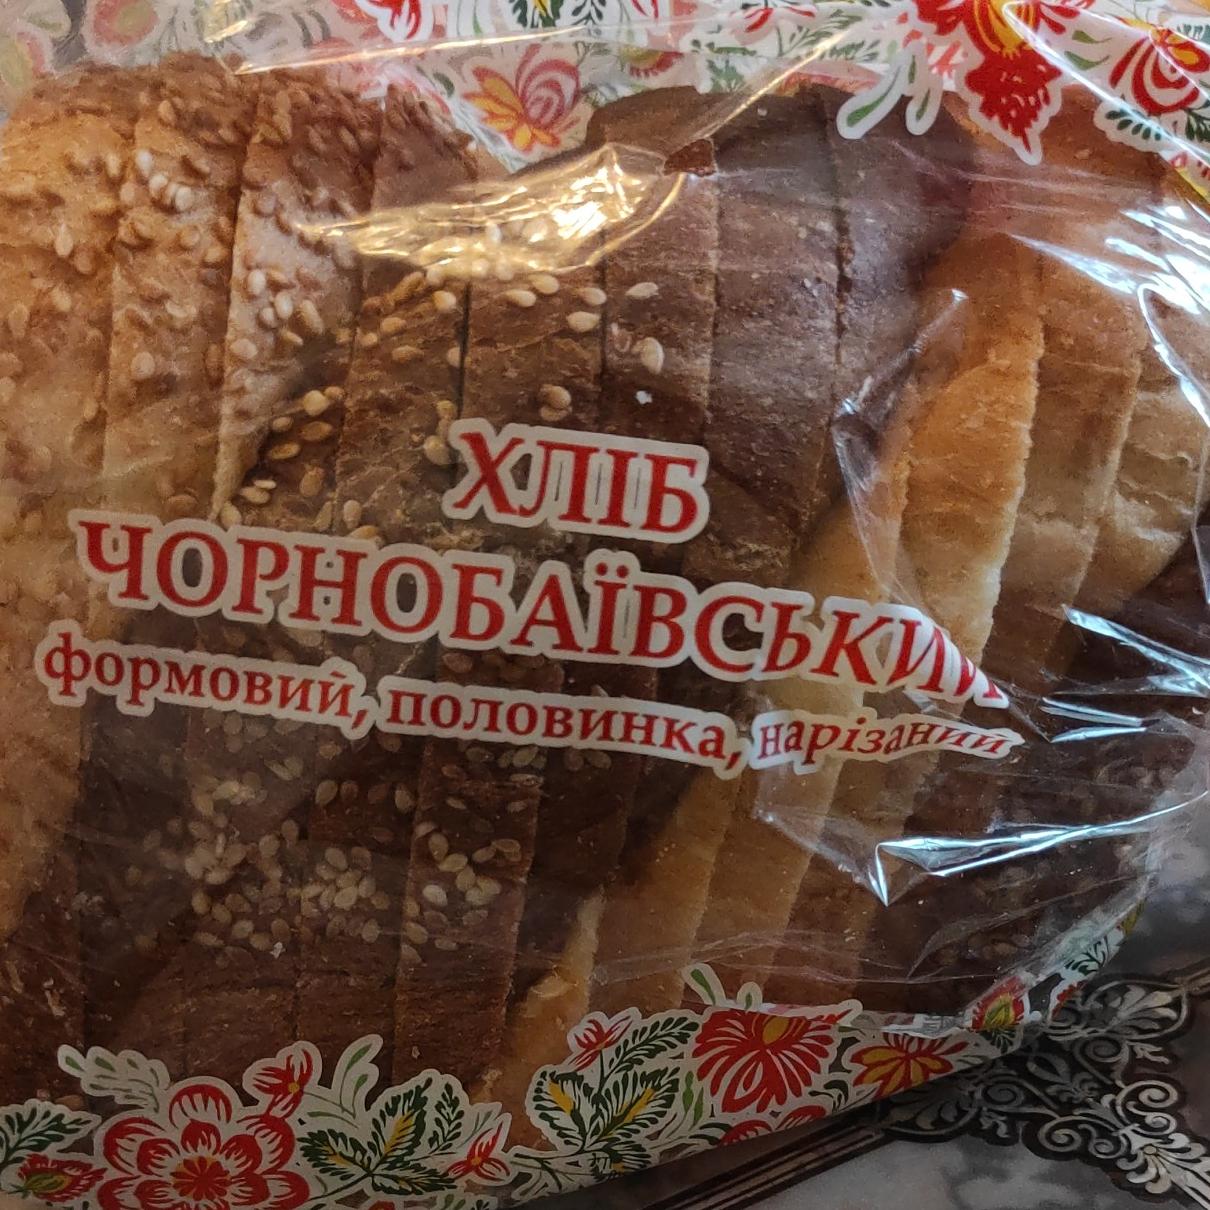 Фото - Хліб Чорнобаївський Дніпровський хлібокомбінат №5